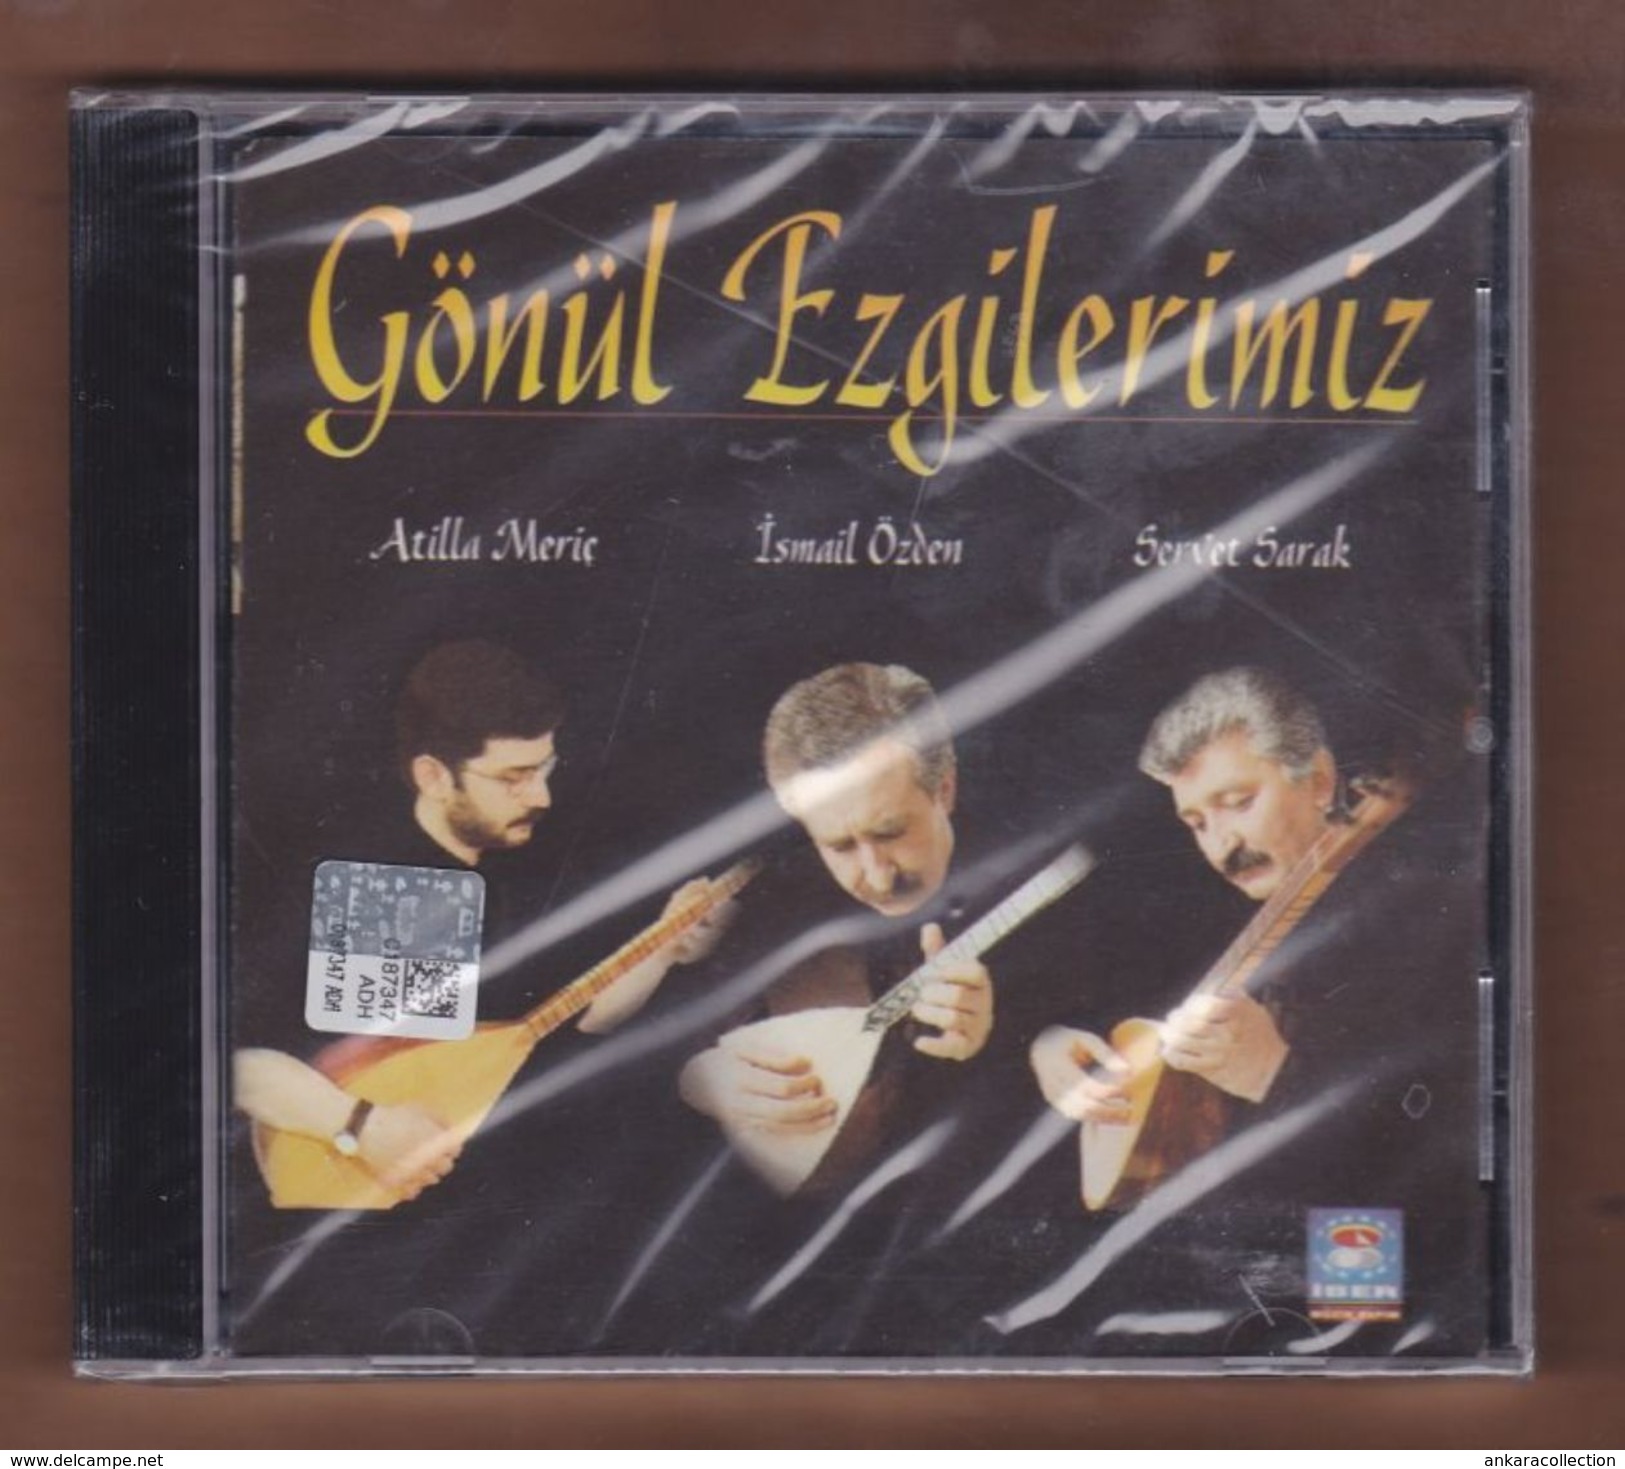 AC -  Atilla Meriç Ismail özden Servet Sarak Gözül Ezgilerimiz BRAND NEW TURKISH MUSIC CD - Wereldmuziek